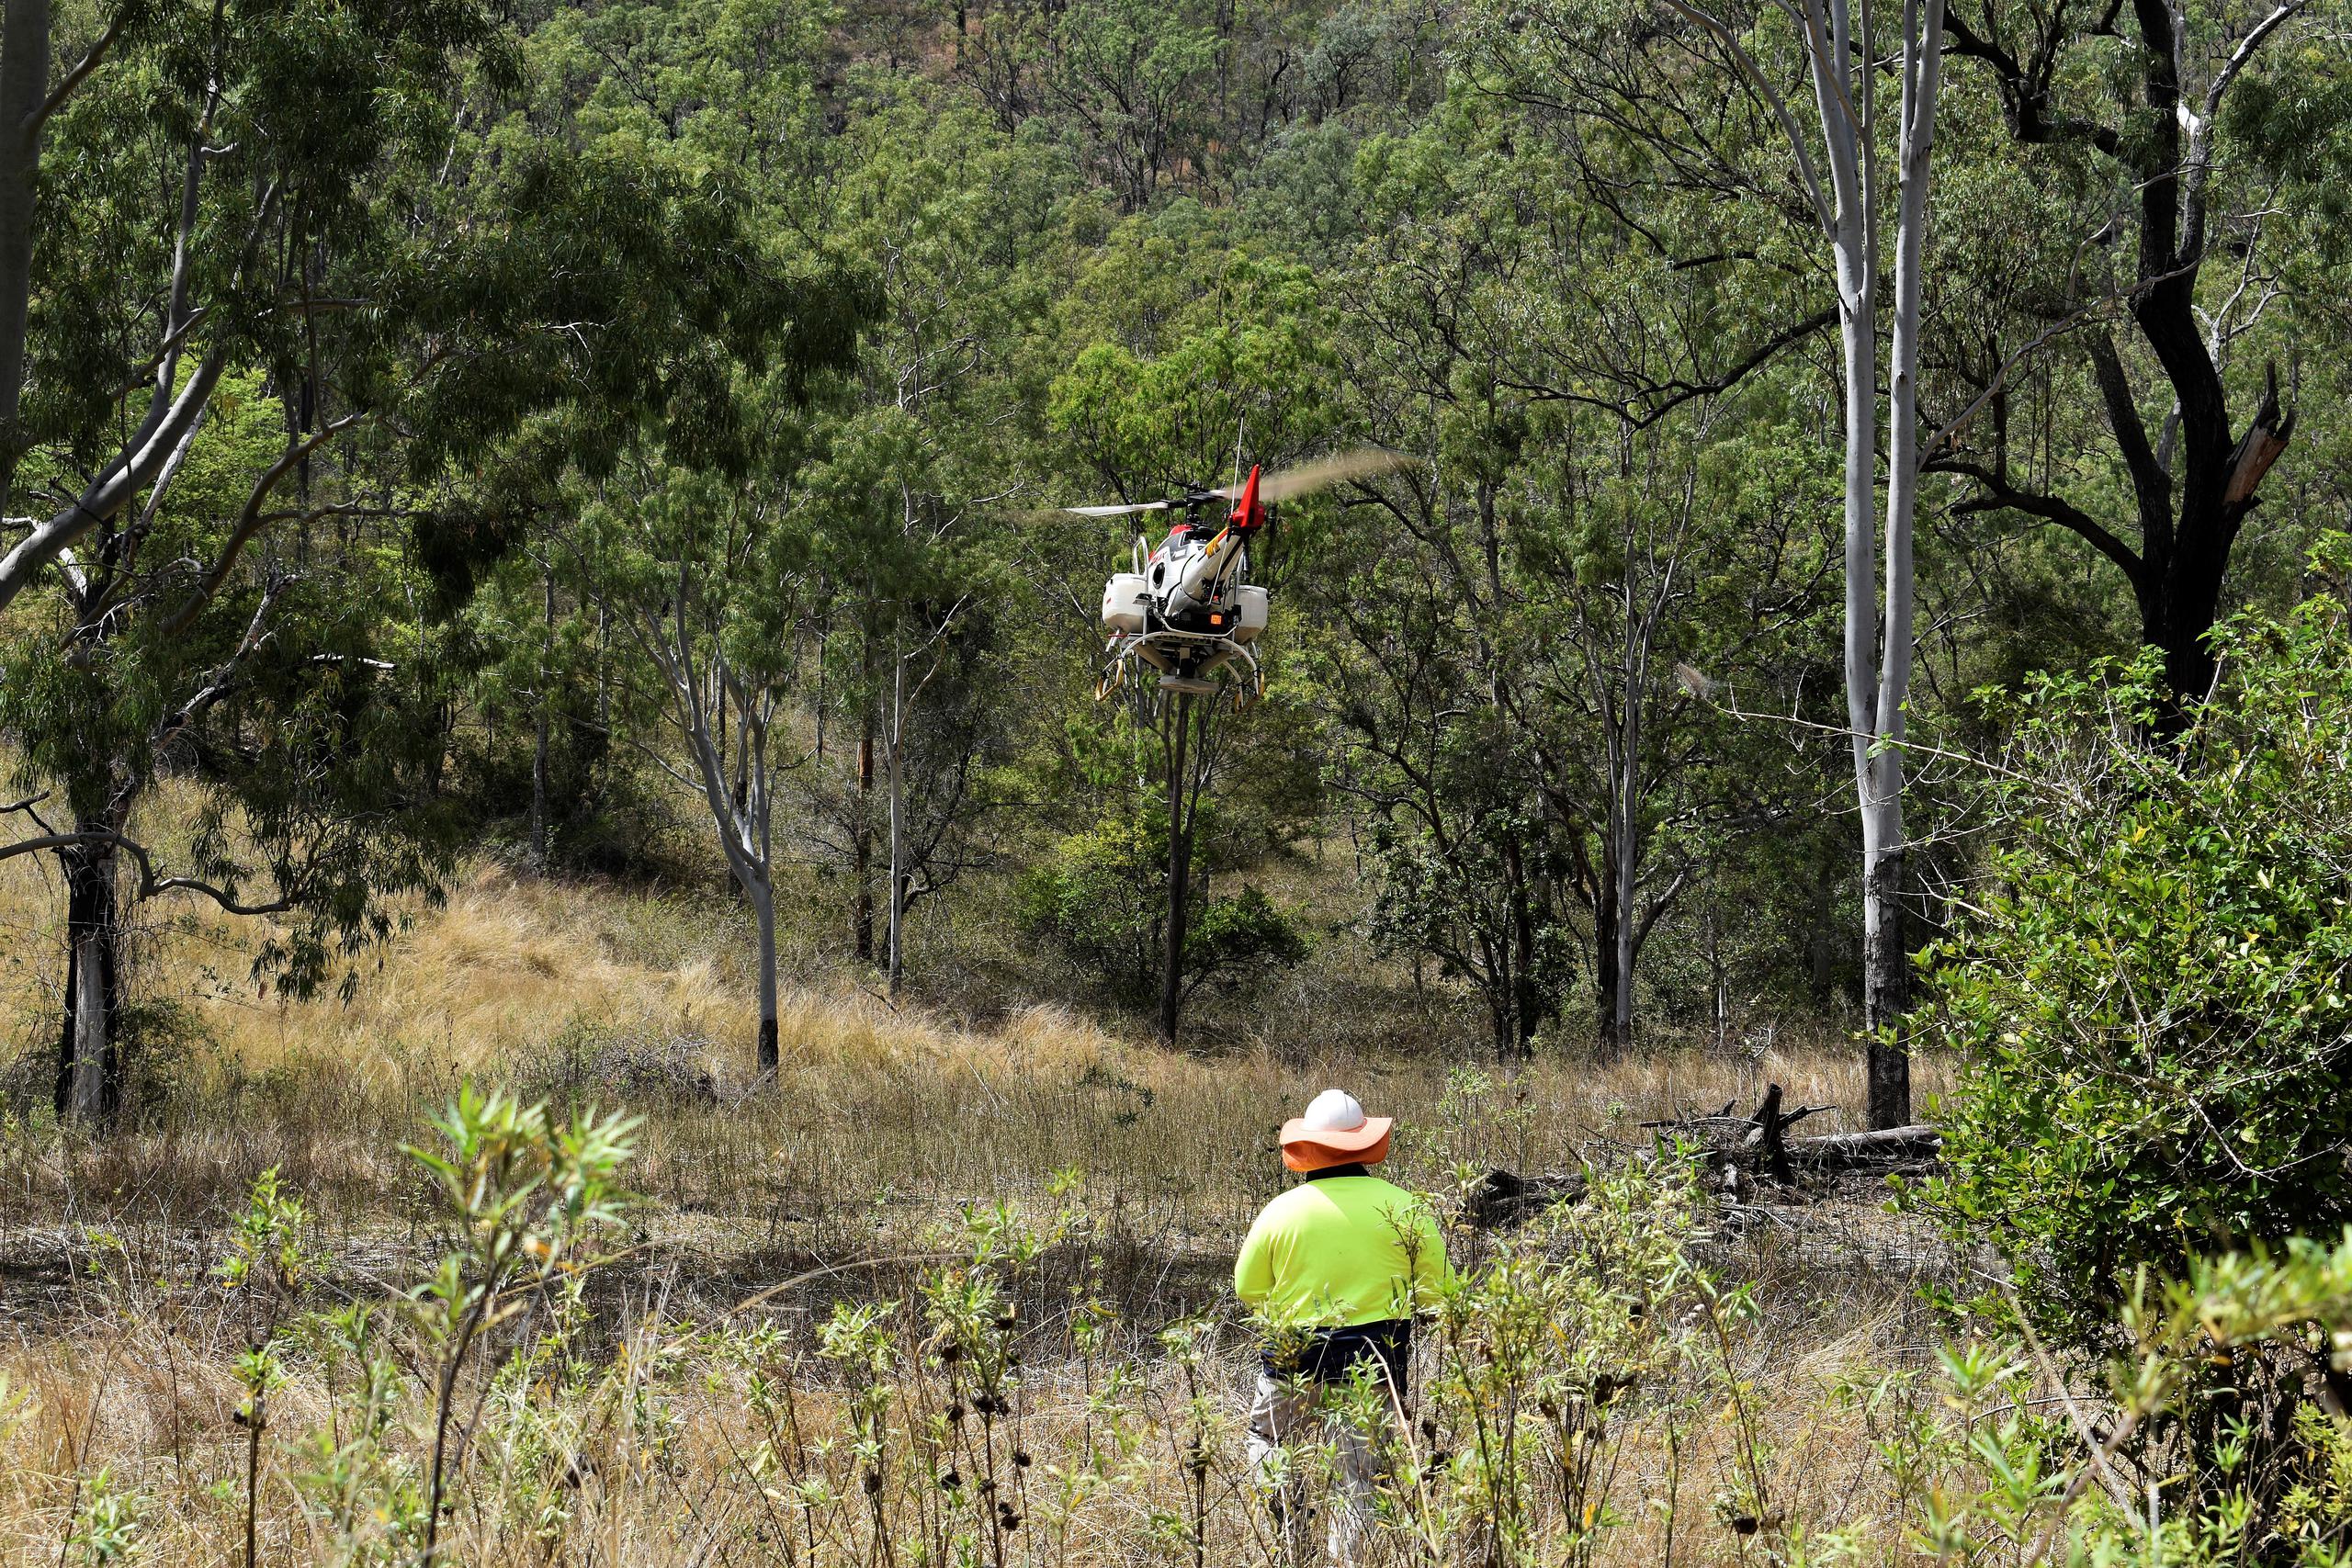 Plantar semillas de árboles con drones en Australia, cuyos bosques fueron calcinados por los devastadores incendios forestales de 2019-20, es parte de un plan piloto que está a punto de comenzar para restaurar los hábitat de los koalas y salvarlo de la extinción.